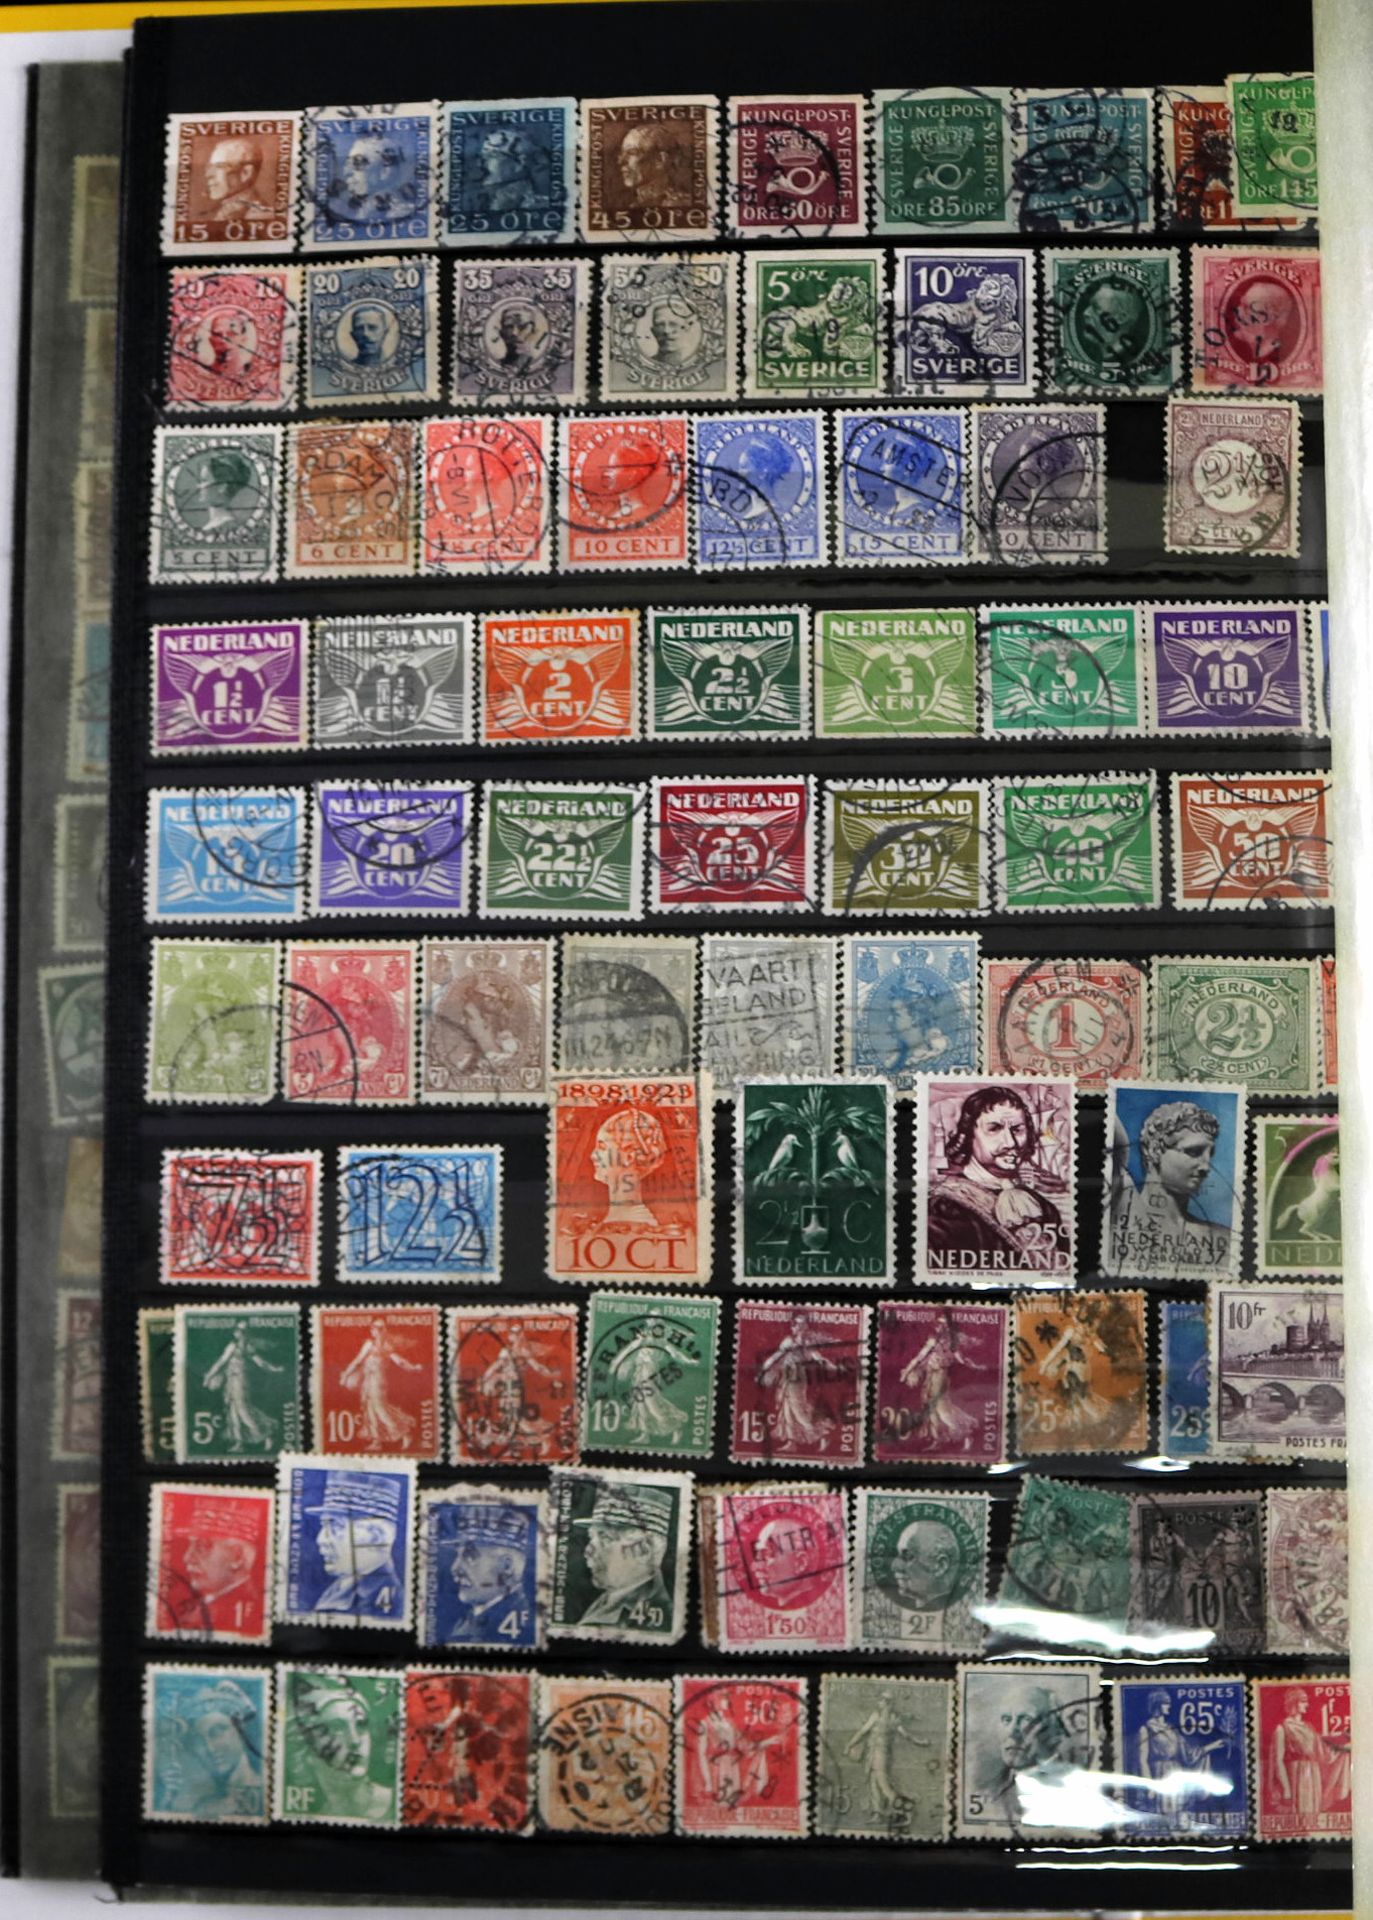 Konvolut Briefmarken, ca. 600 Stk., Briefmarken aus Deutschland, Europa und Amerika, 19./20. Jh. - Image 6 of 6